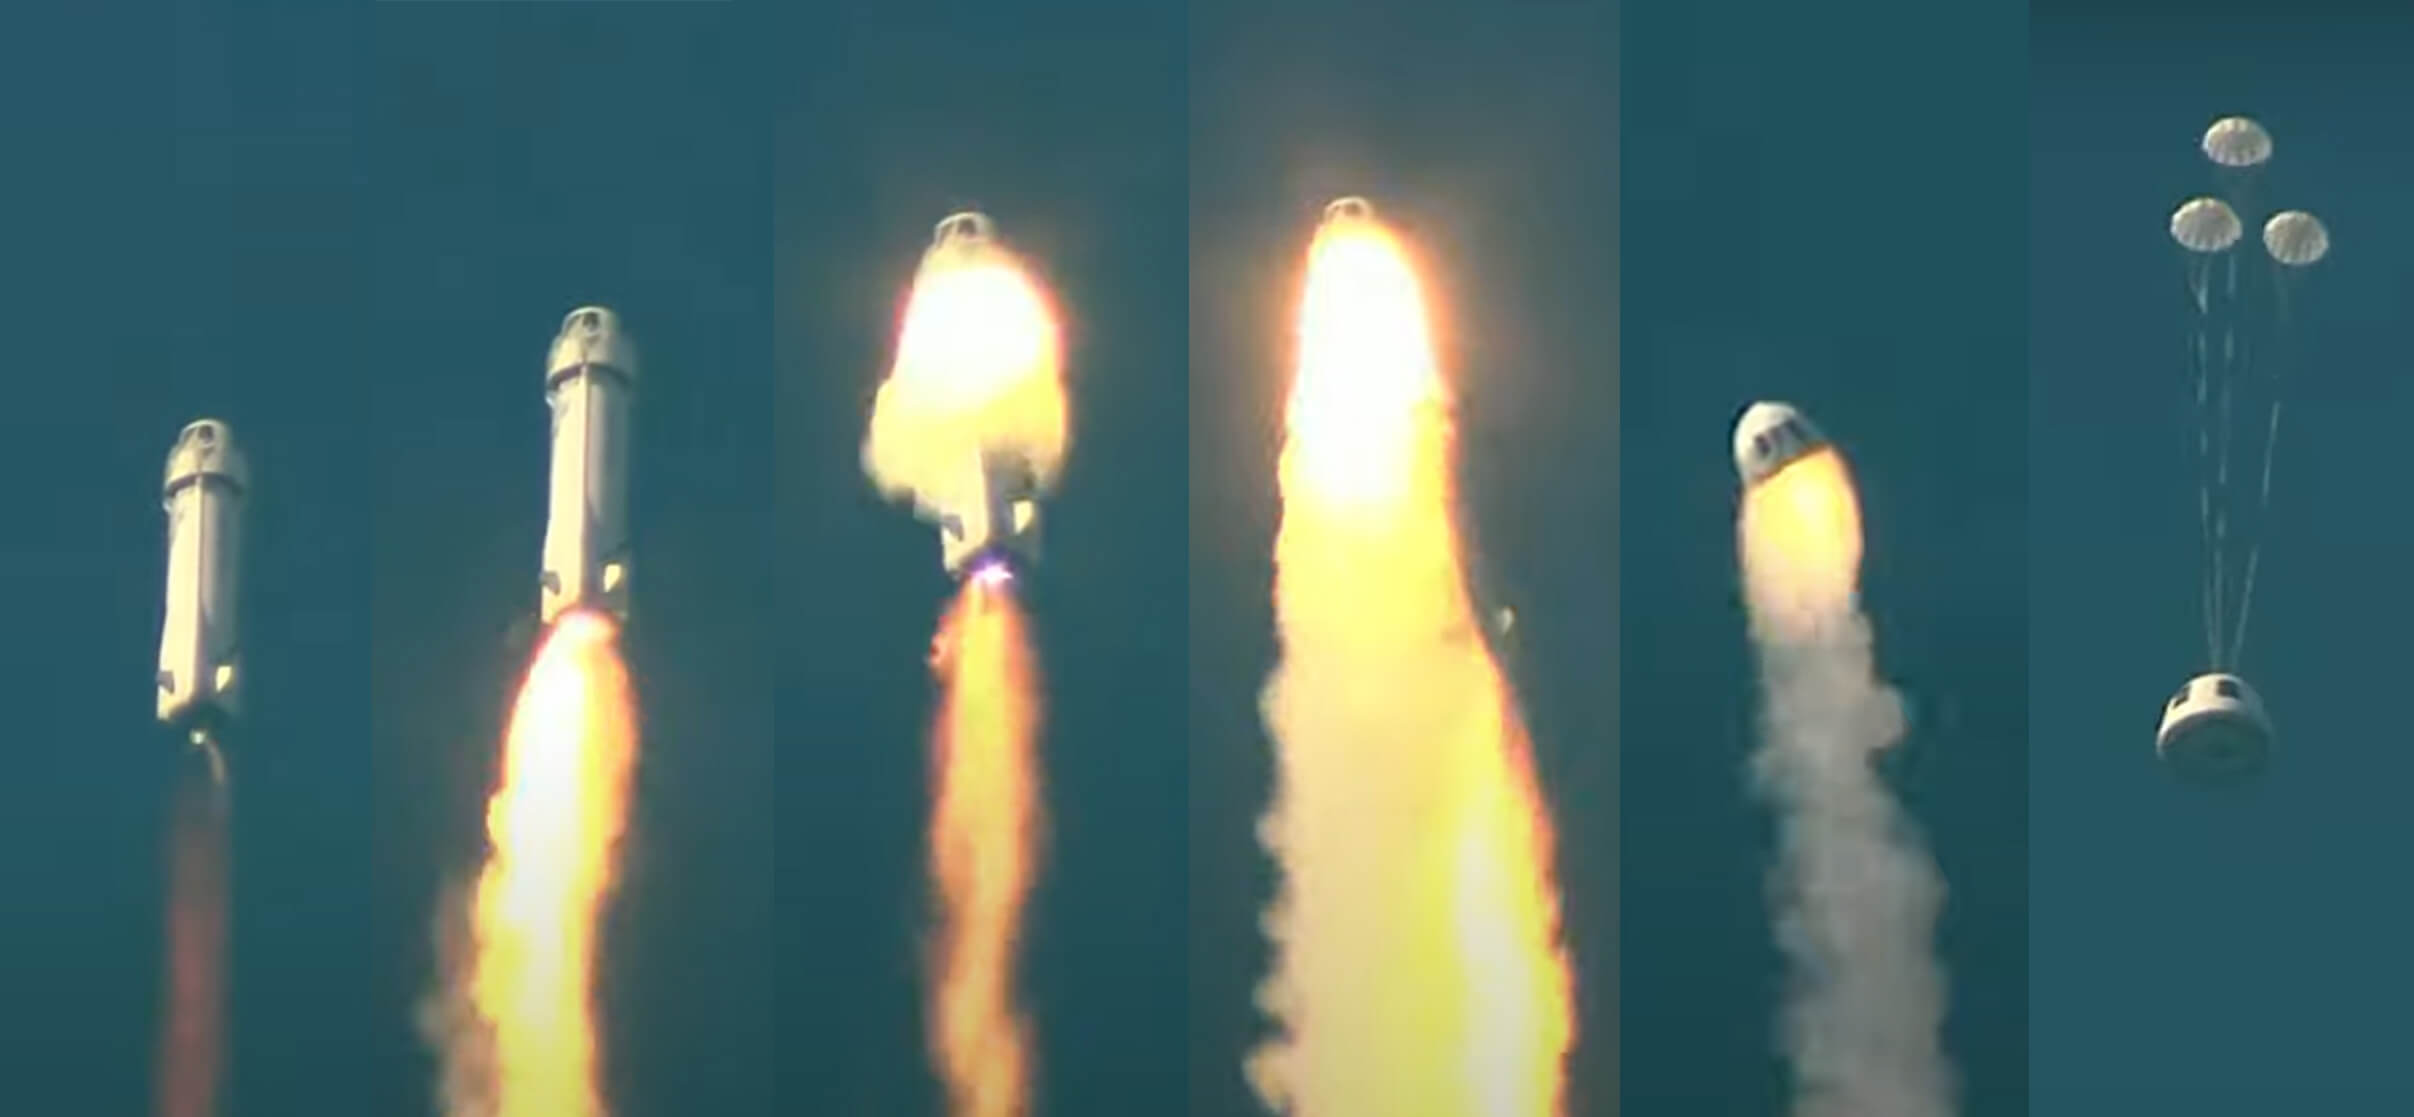 エンジンに火がついた後、Blue Originロケットの打ち上げに失敗しました